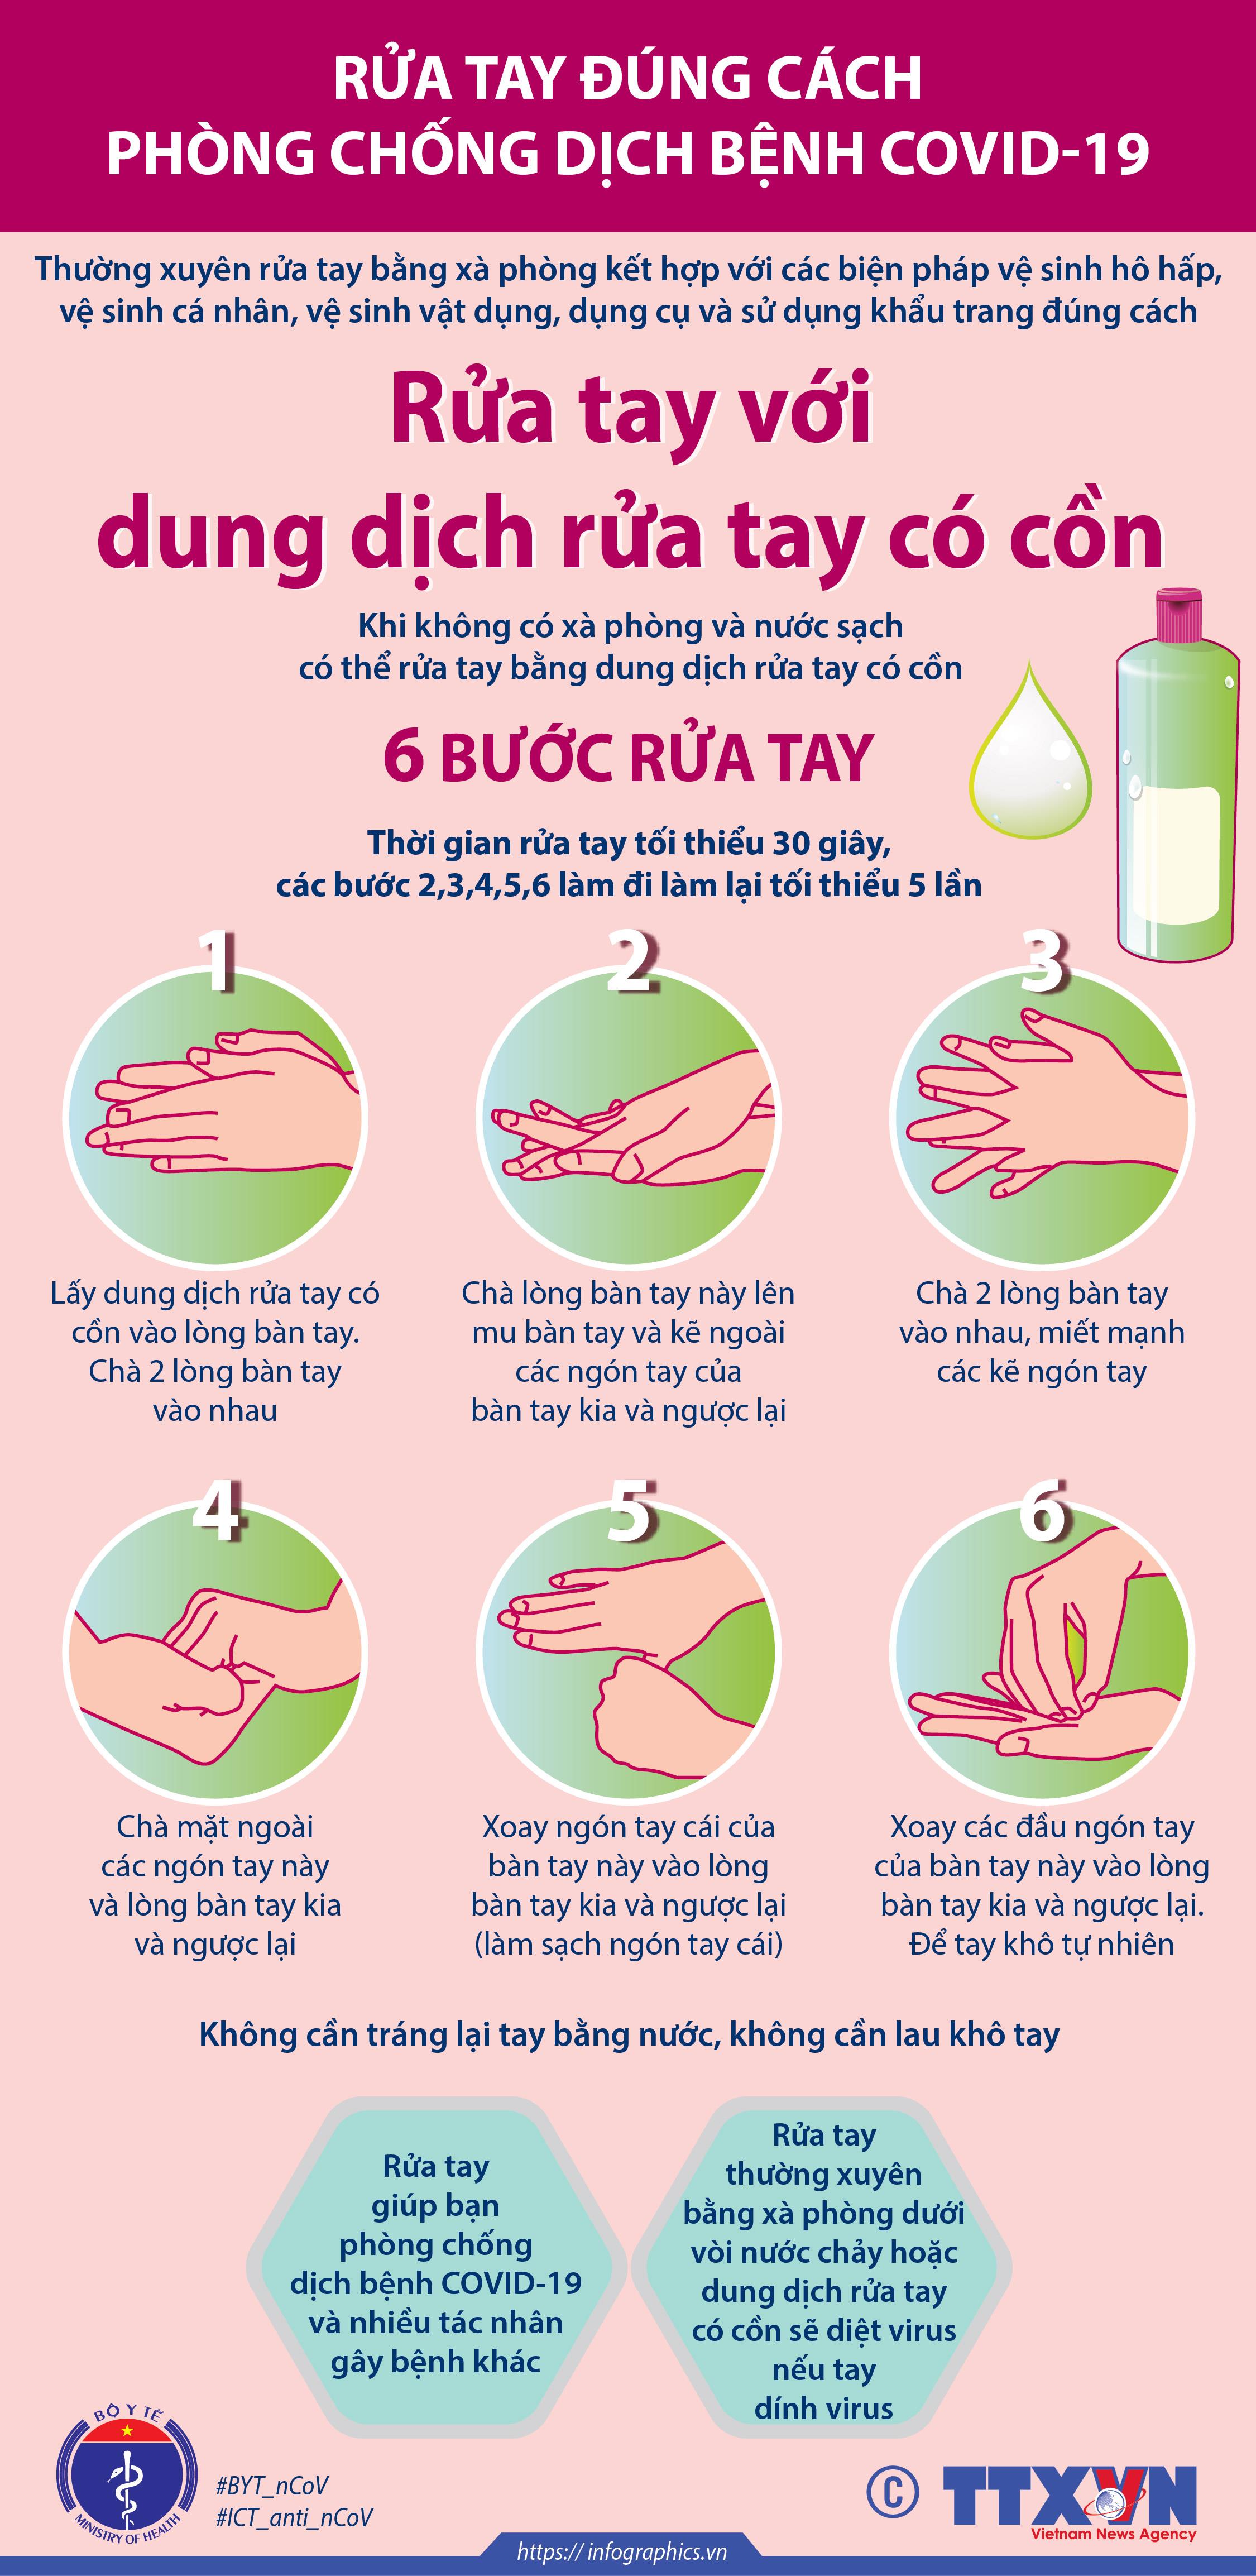 Rửa tay đúng cách, phòng chống dịch bệnh COVID-19: Cùng chung tay đẩy lùi COVID-19 bằng việc thực hiện đúng cách rửa tay. Hãy xem hình ảnh để biết các bước rửa tay hiệu quả và cùng nhau phòng chống dịch bệnh.